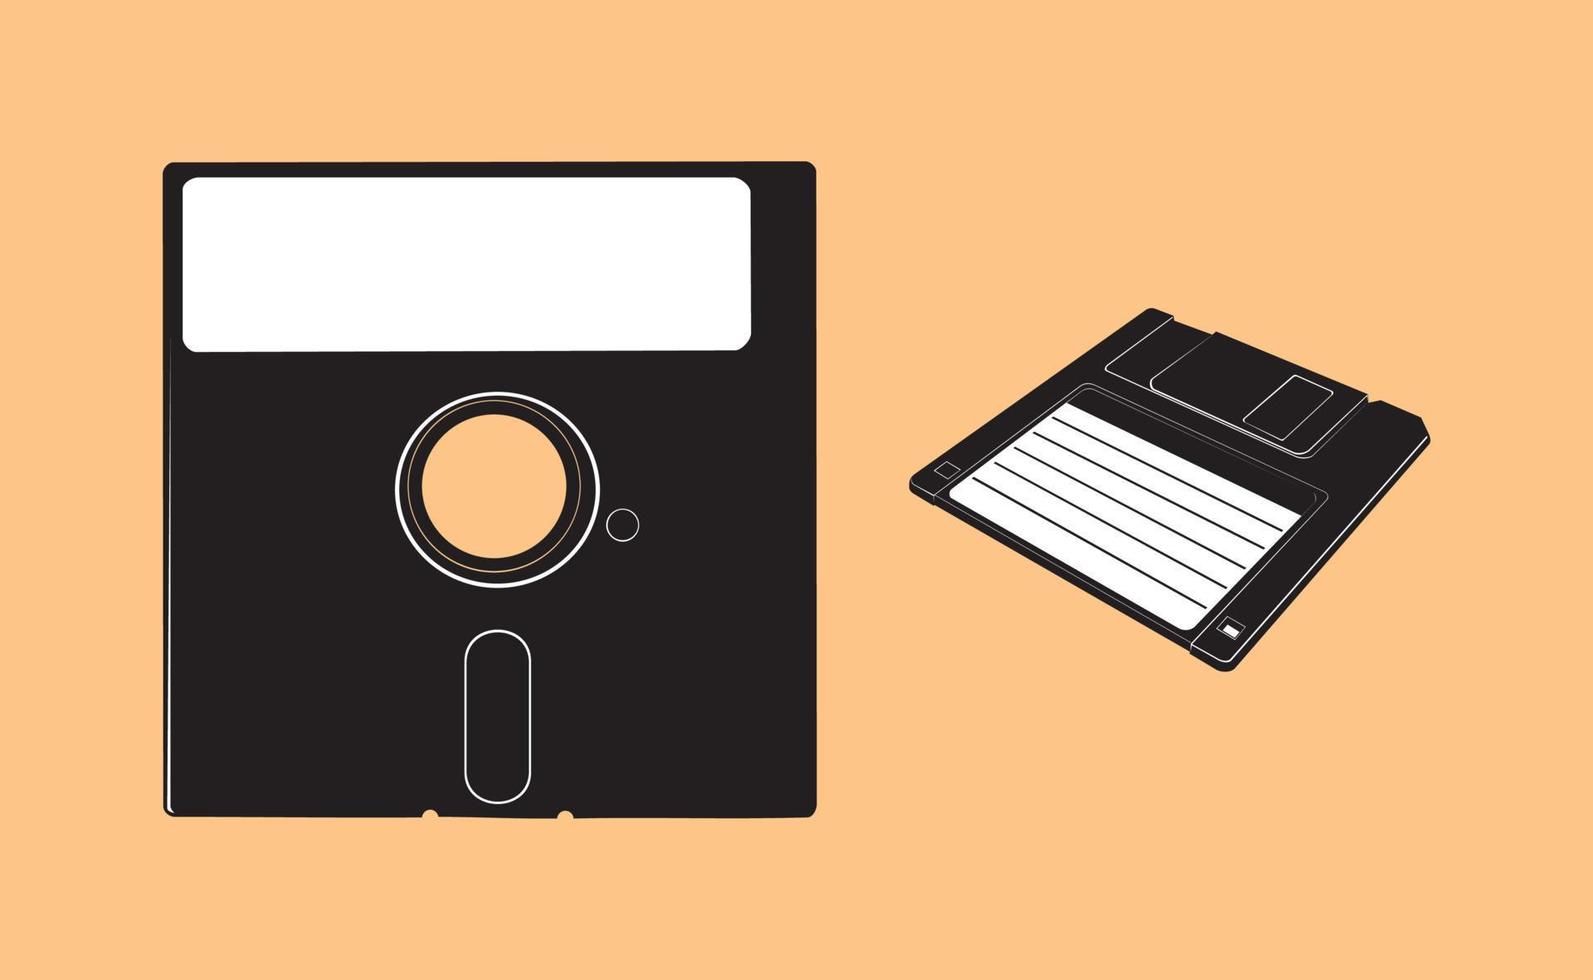 illustrazioni vettoriali di floppy disk vintage